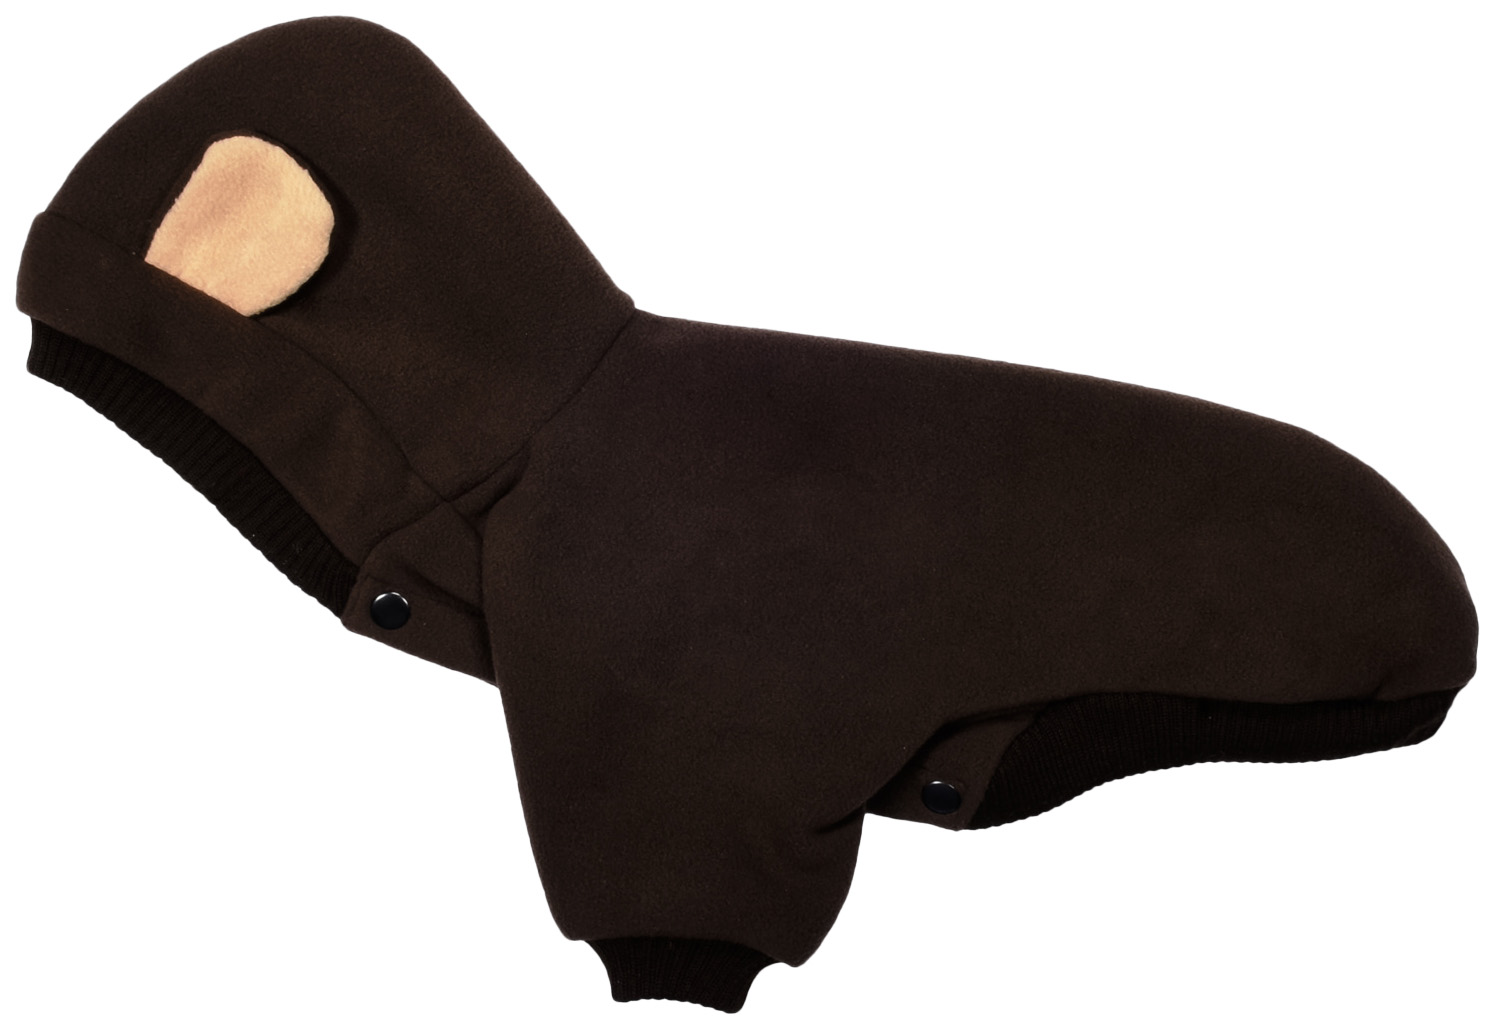 Толстовка для собак Tappi одежда Варгоши, унисекс, коричневый, L, длина спины 30 см